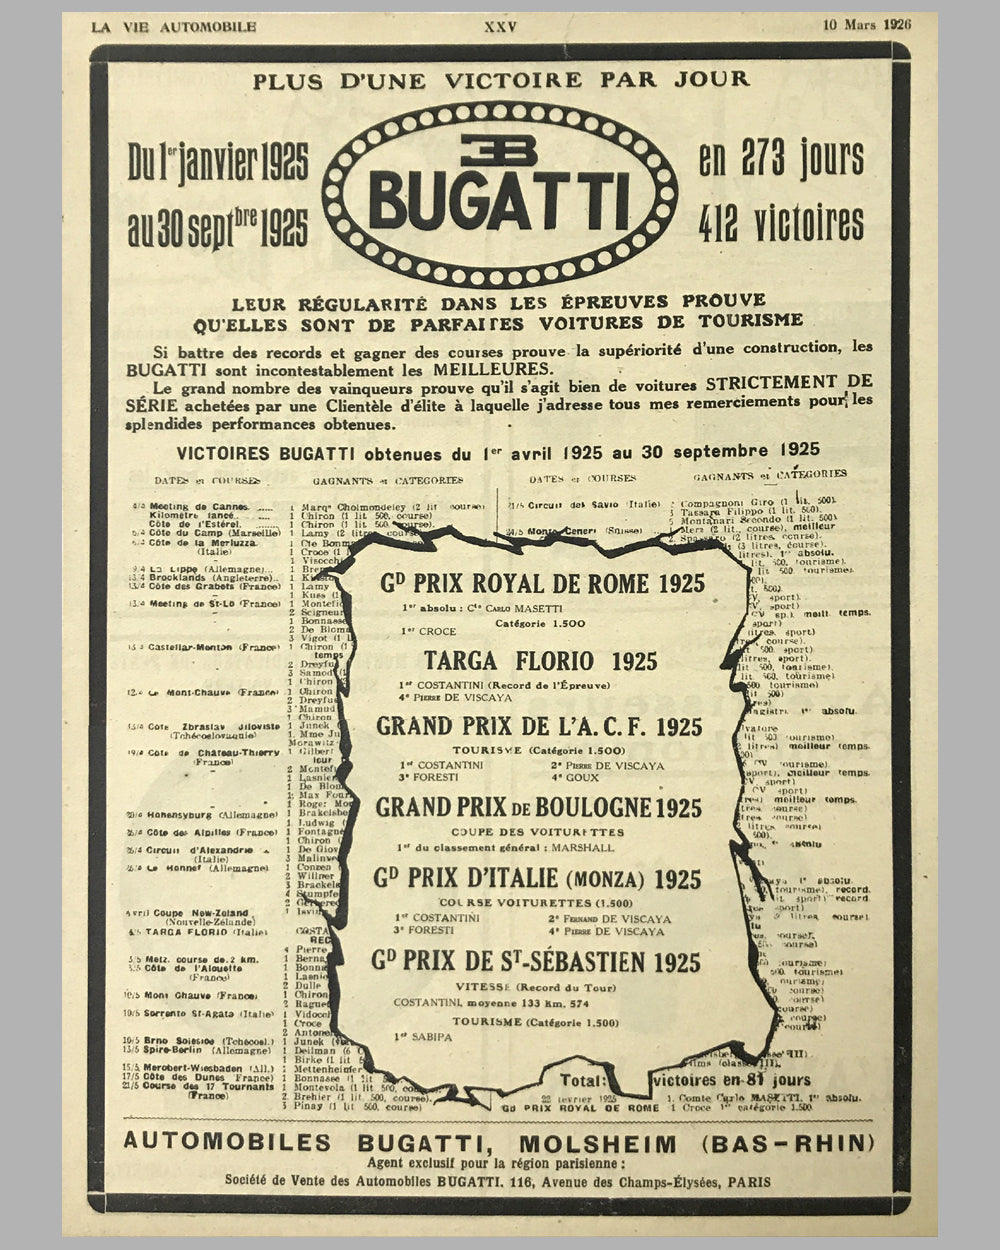 1926 - Bugatti original magazine ad, from March 10 issue of La Vie Automobile